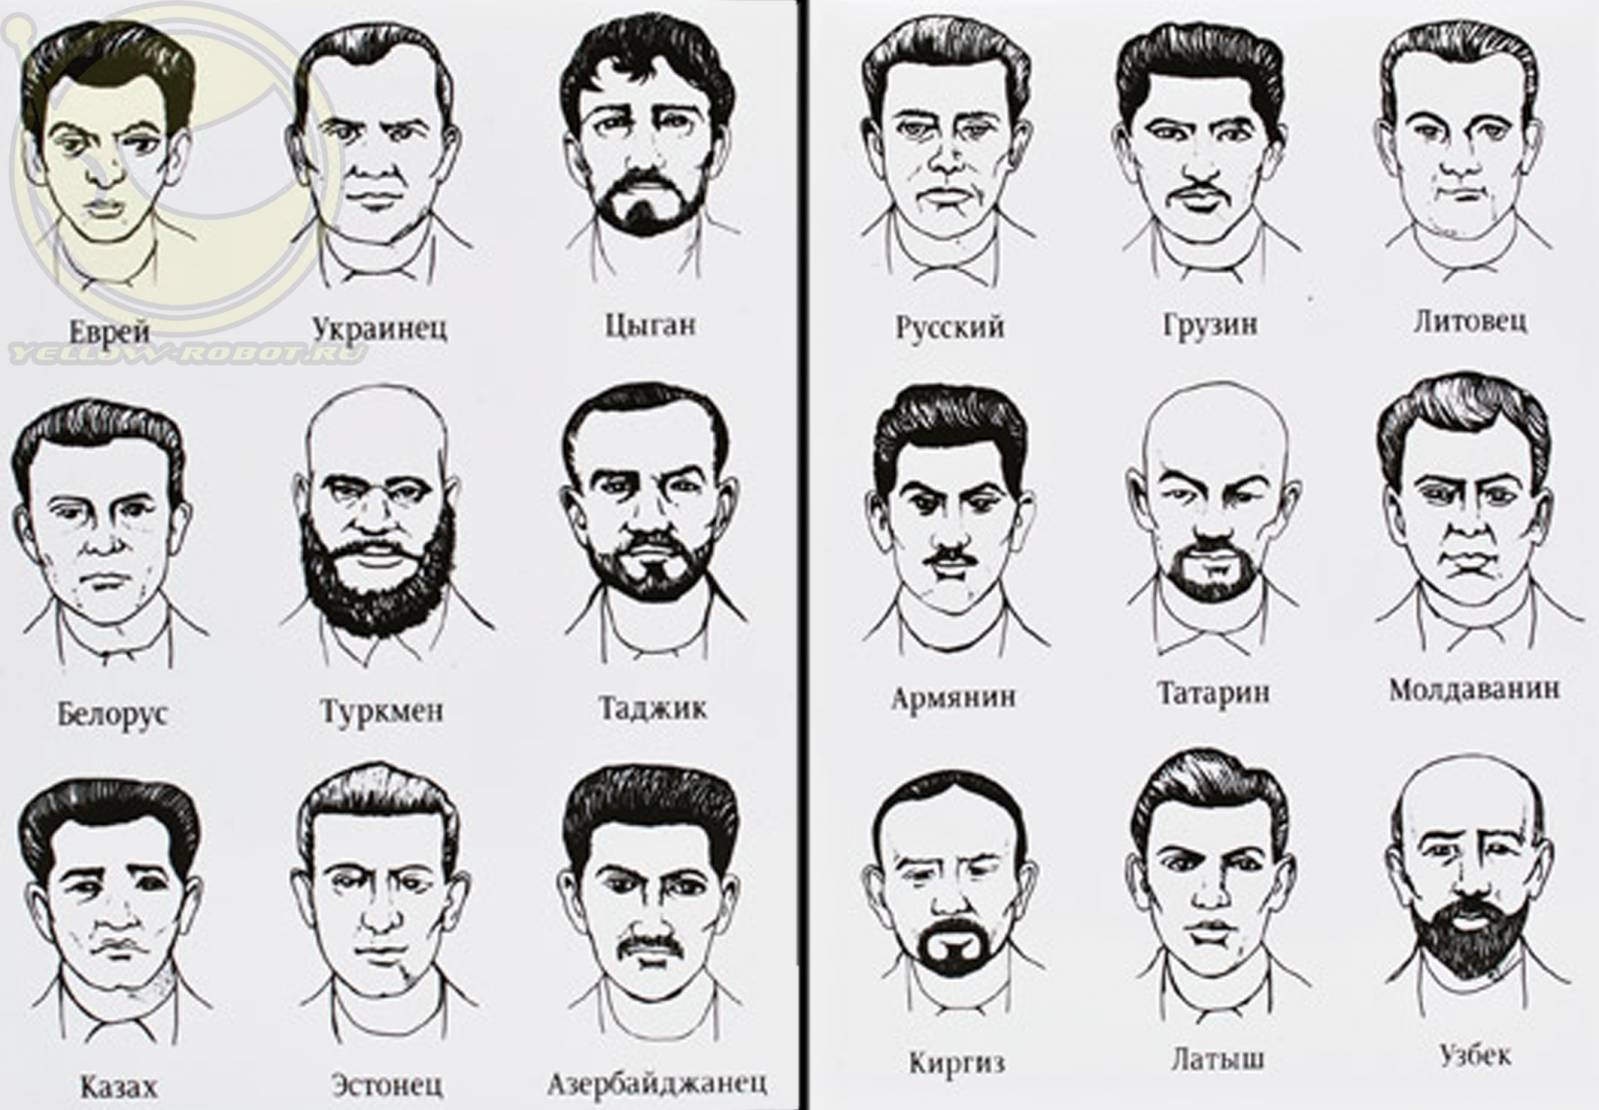 Как отличить киргиза от узбека. Белорусы внешность. Портреты национальностей. Виды национальностей. Лица людей по национальностям.